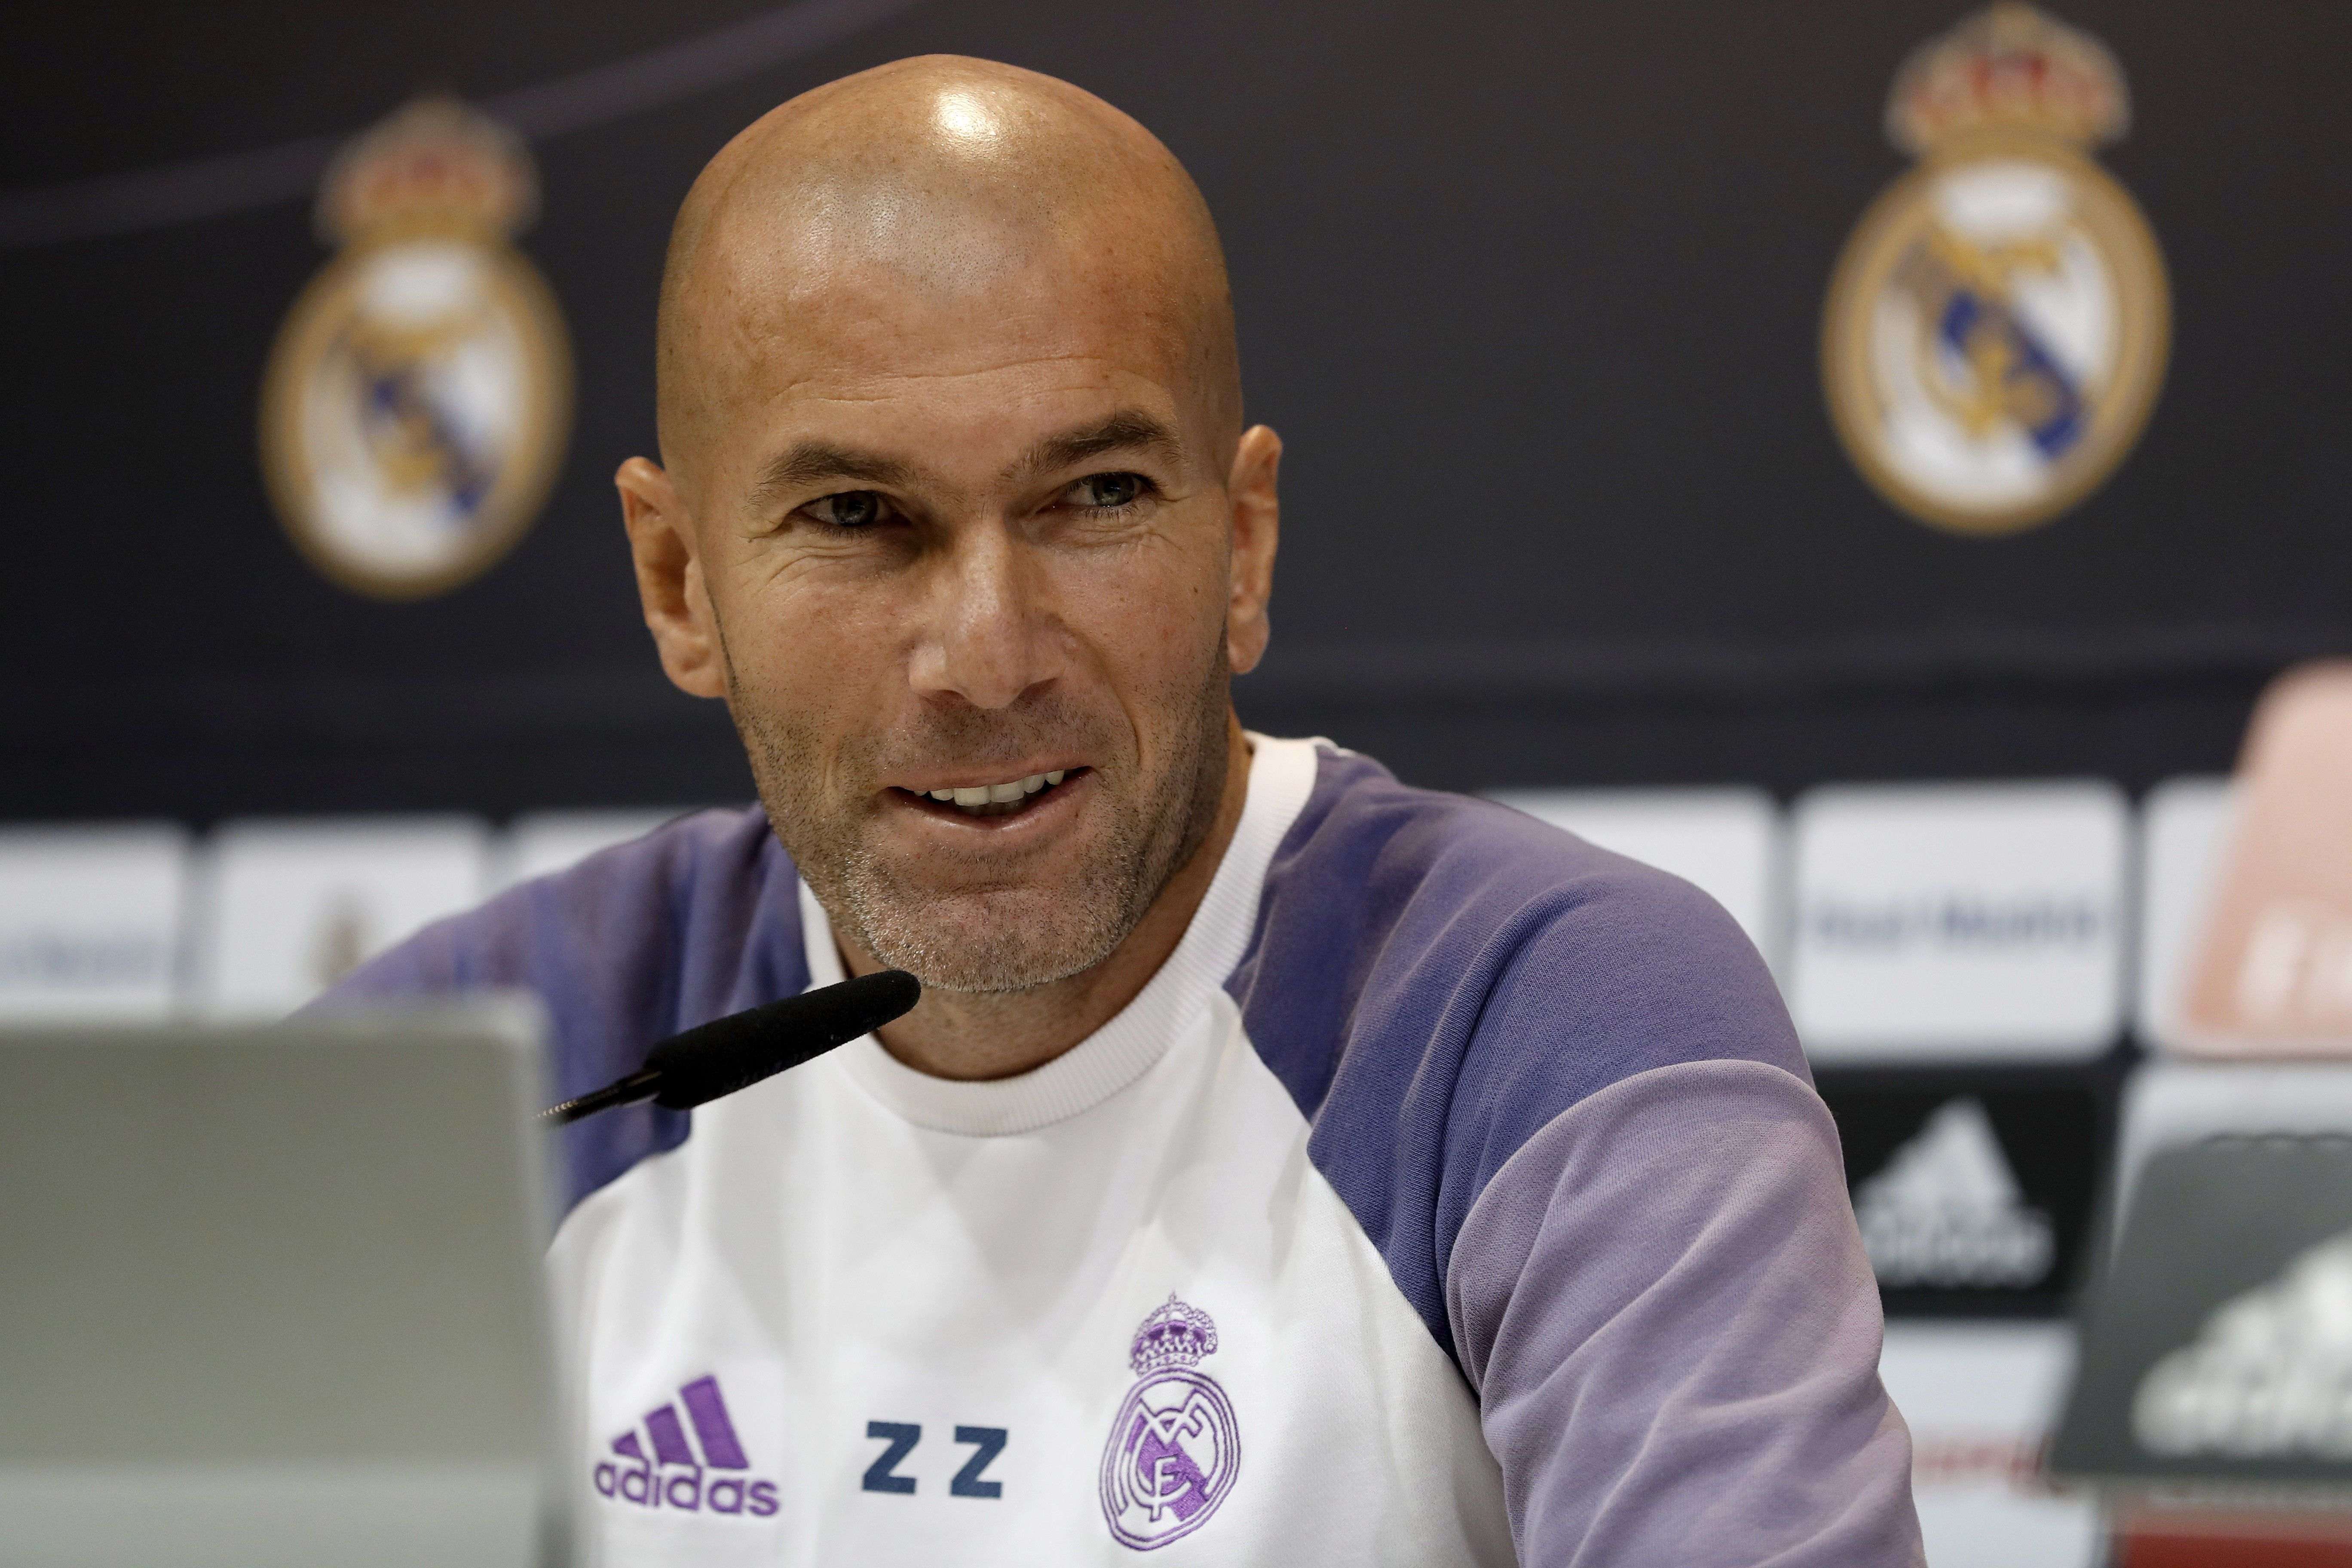 Zidane: "Mai hem fet càlculs perquè no és bo"